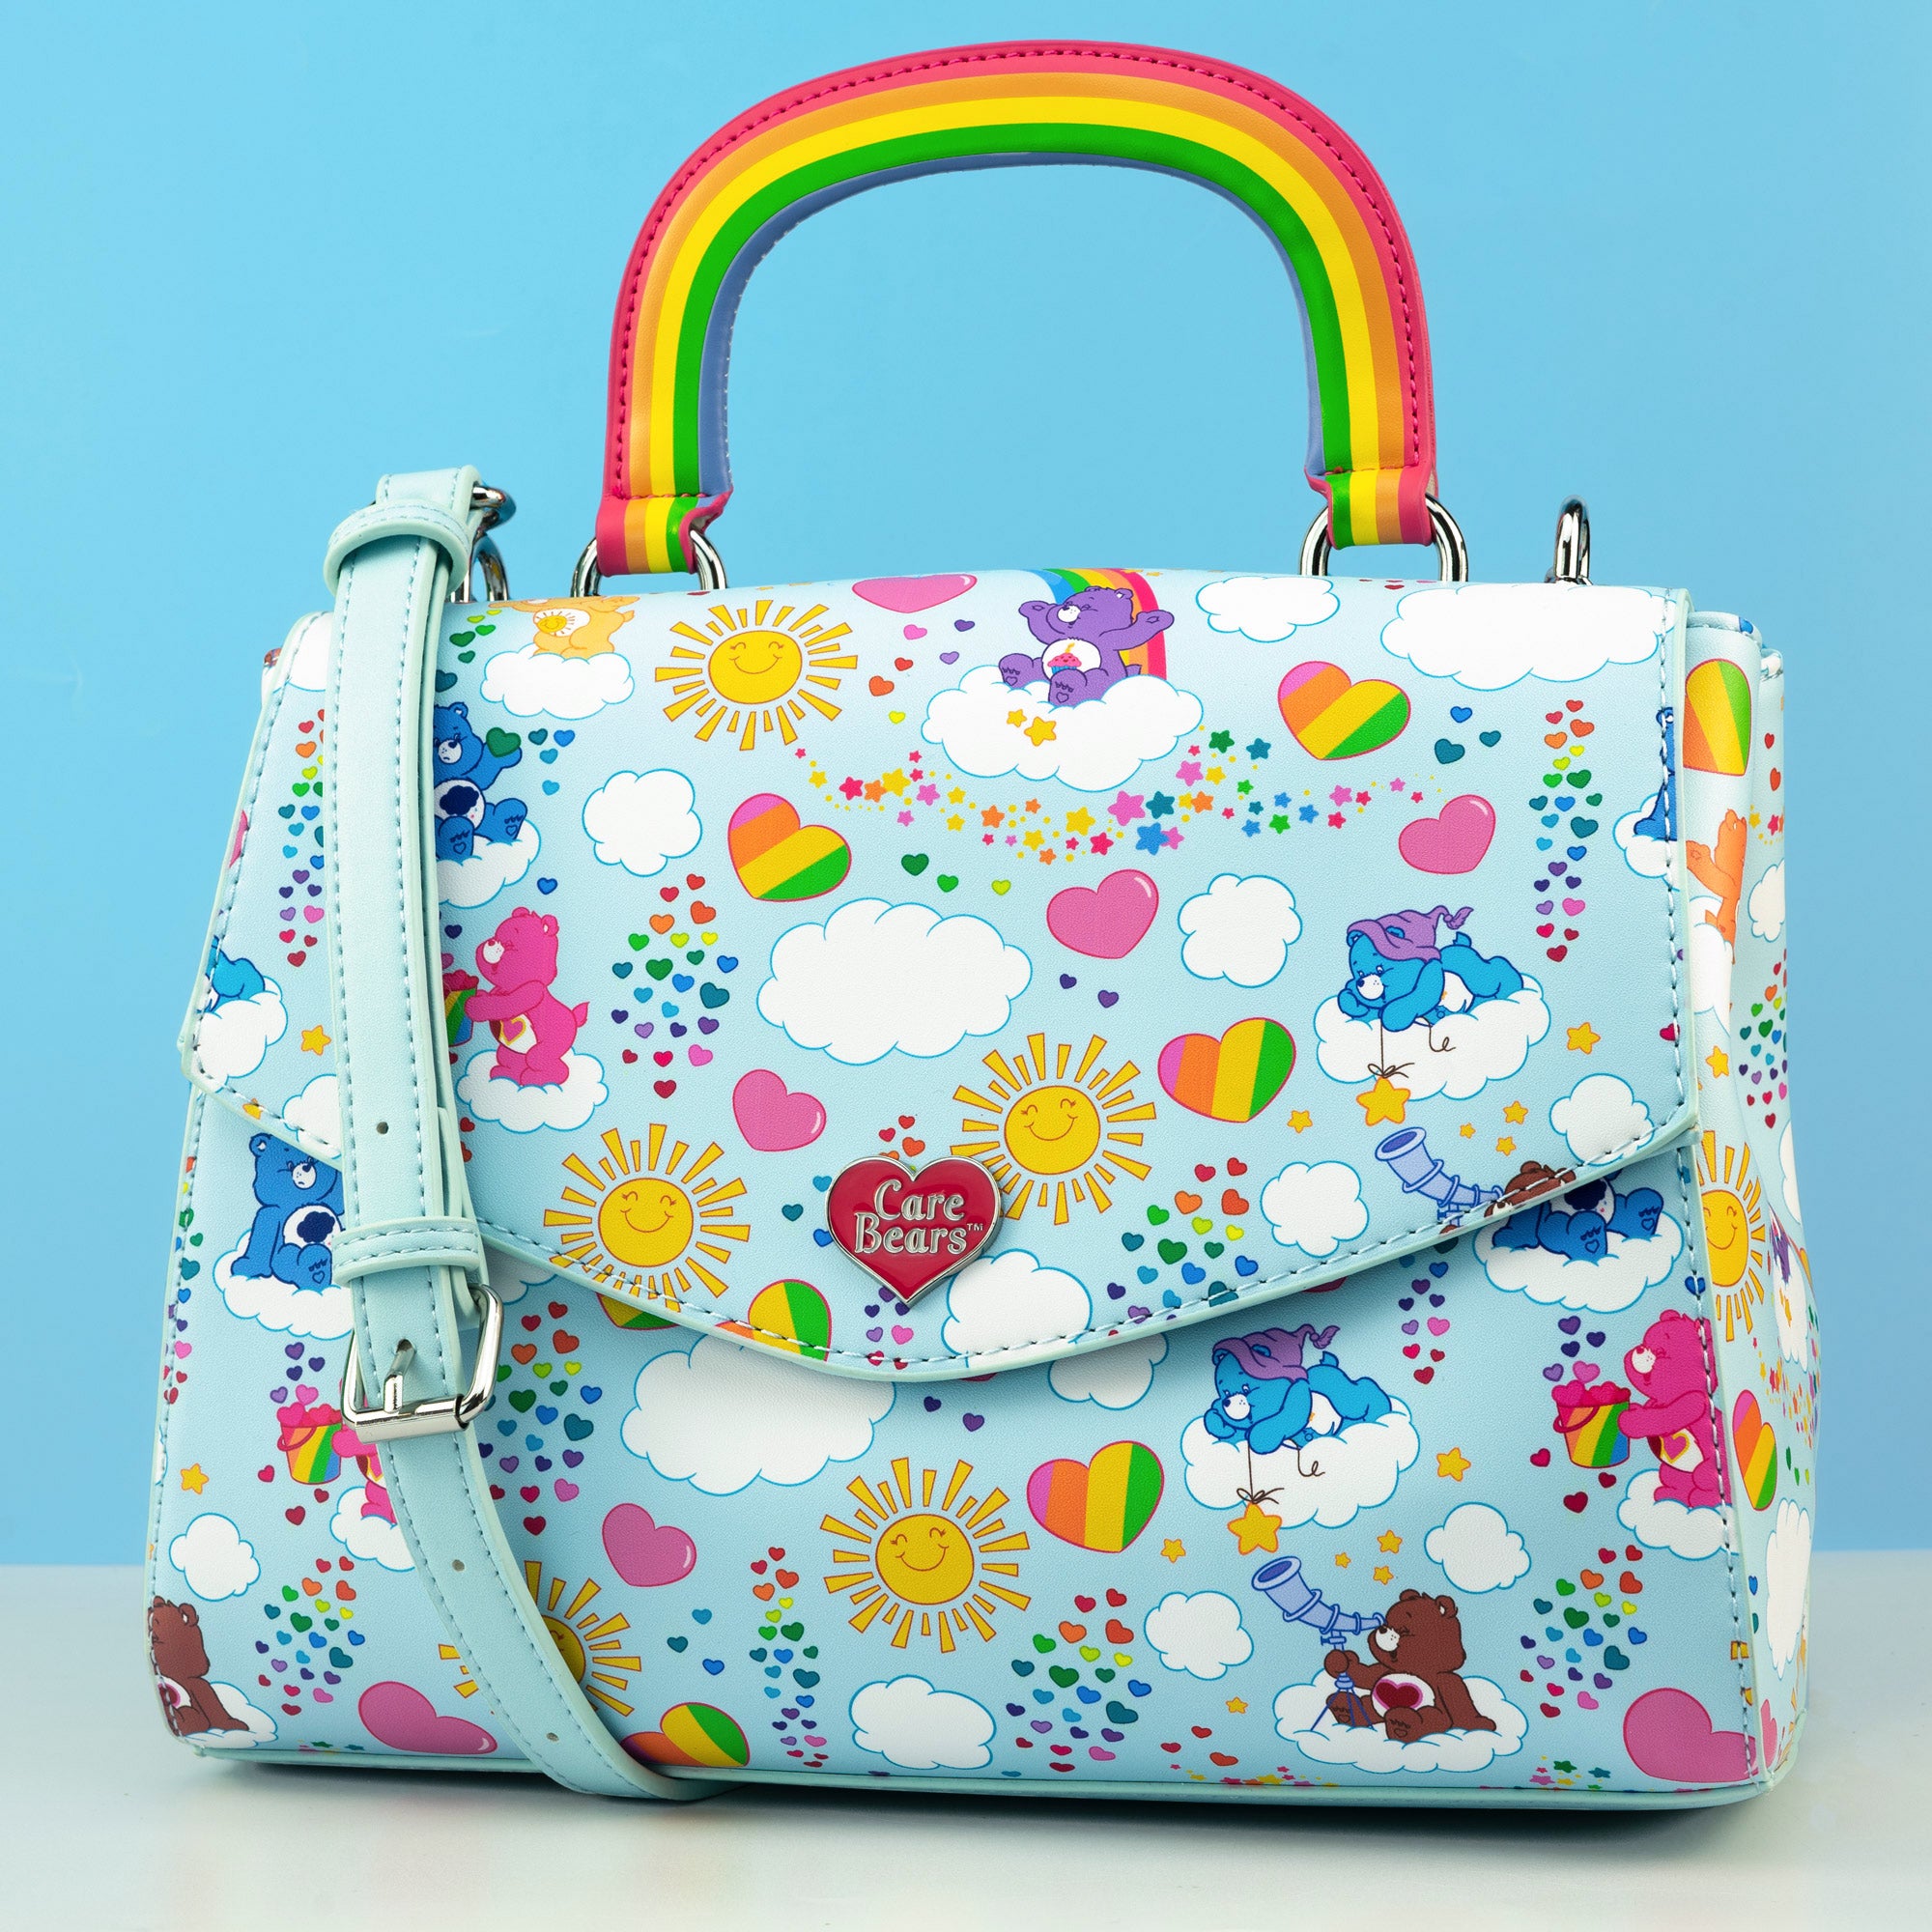 Loungefly x Care Bears All Over Print Rainbow Handle Crossbody Bag